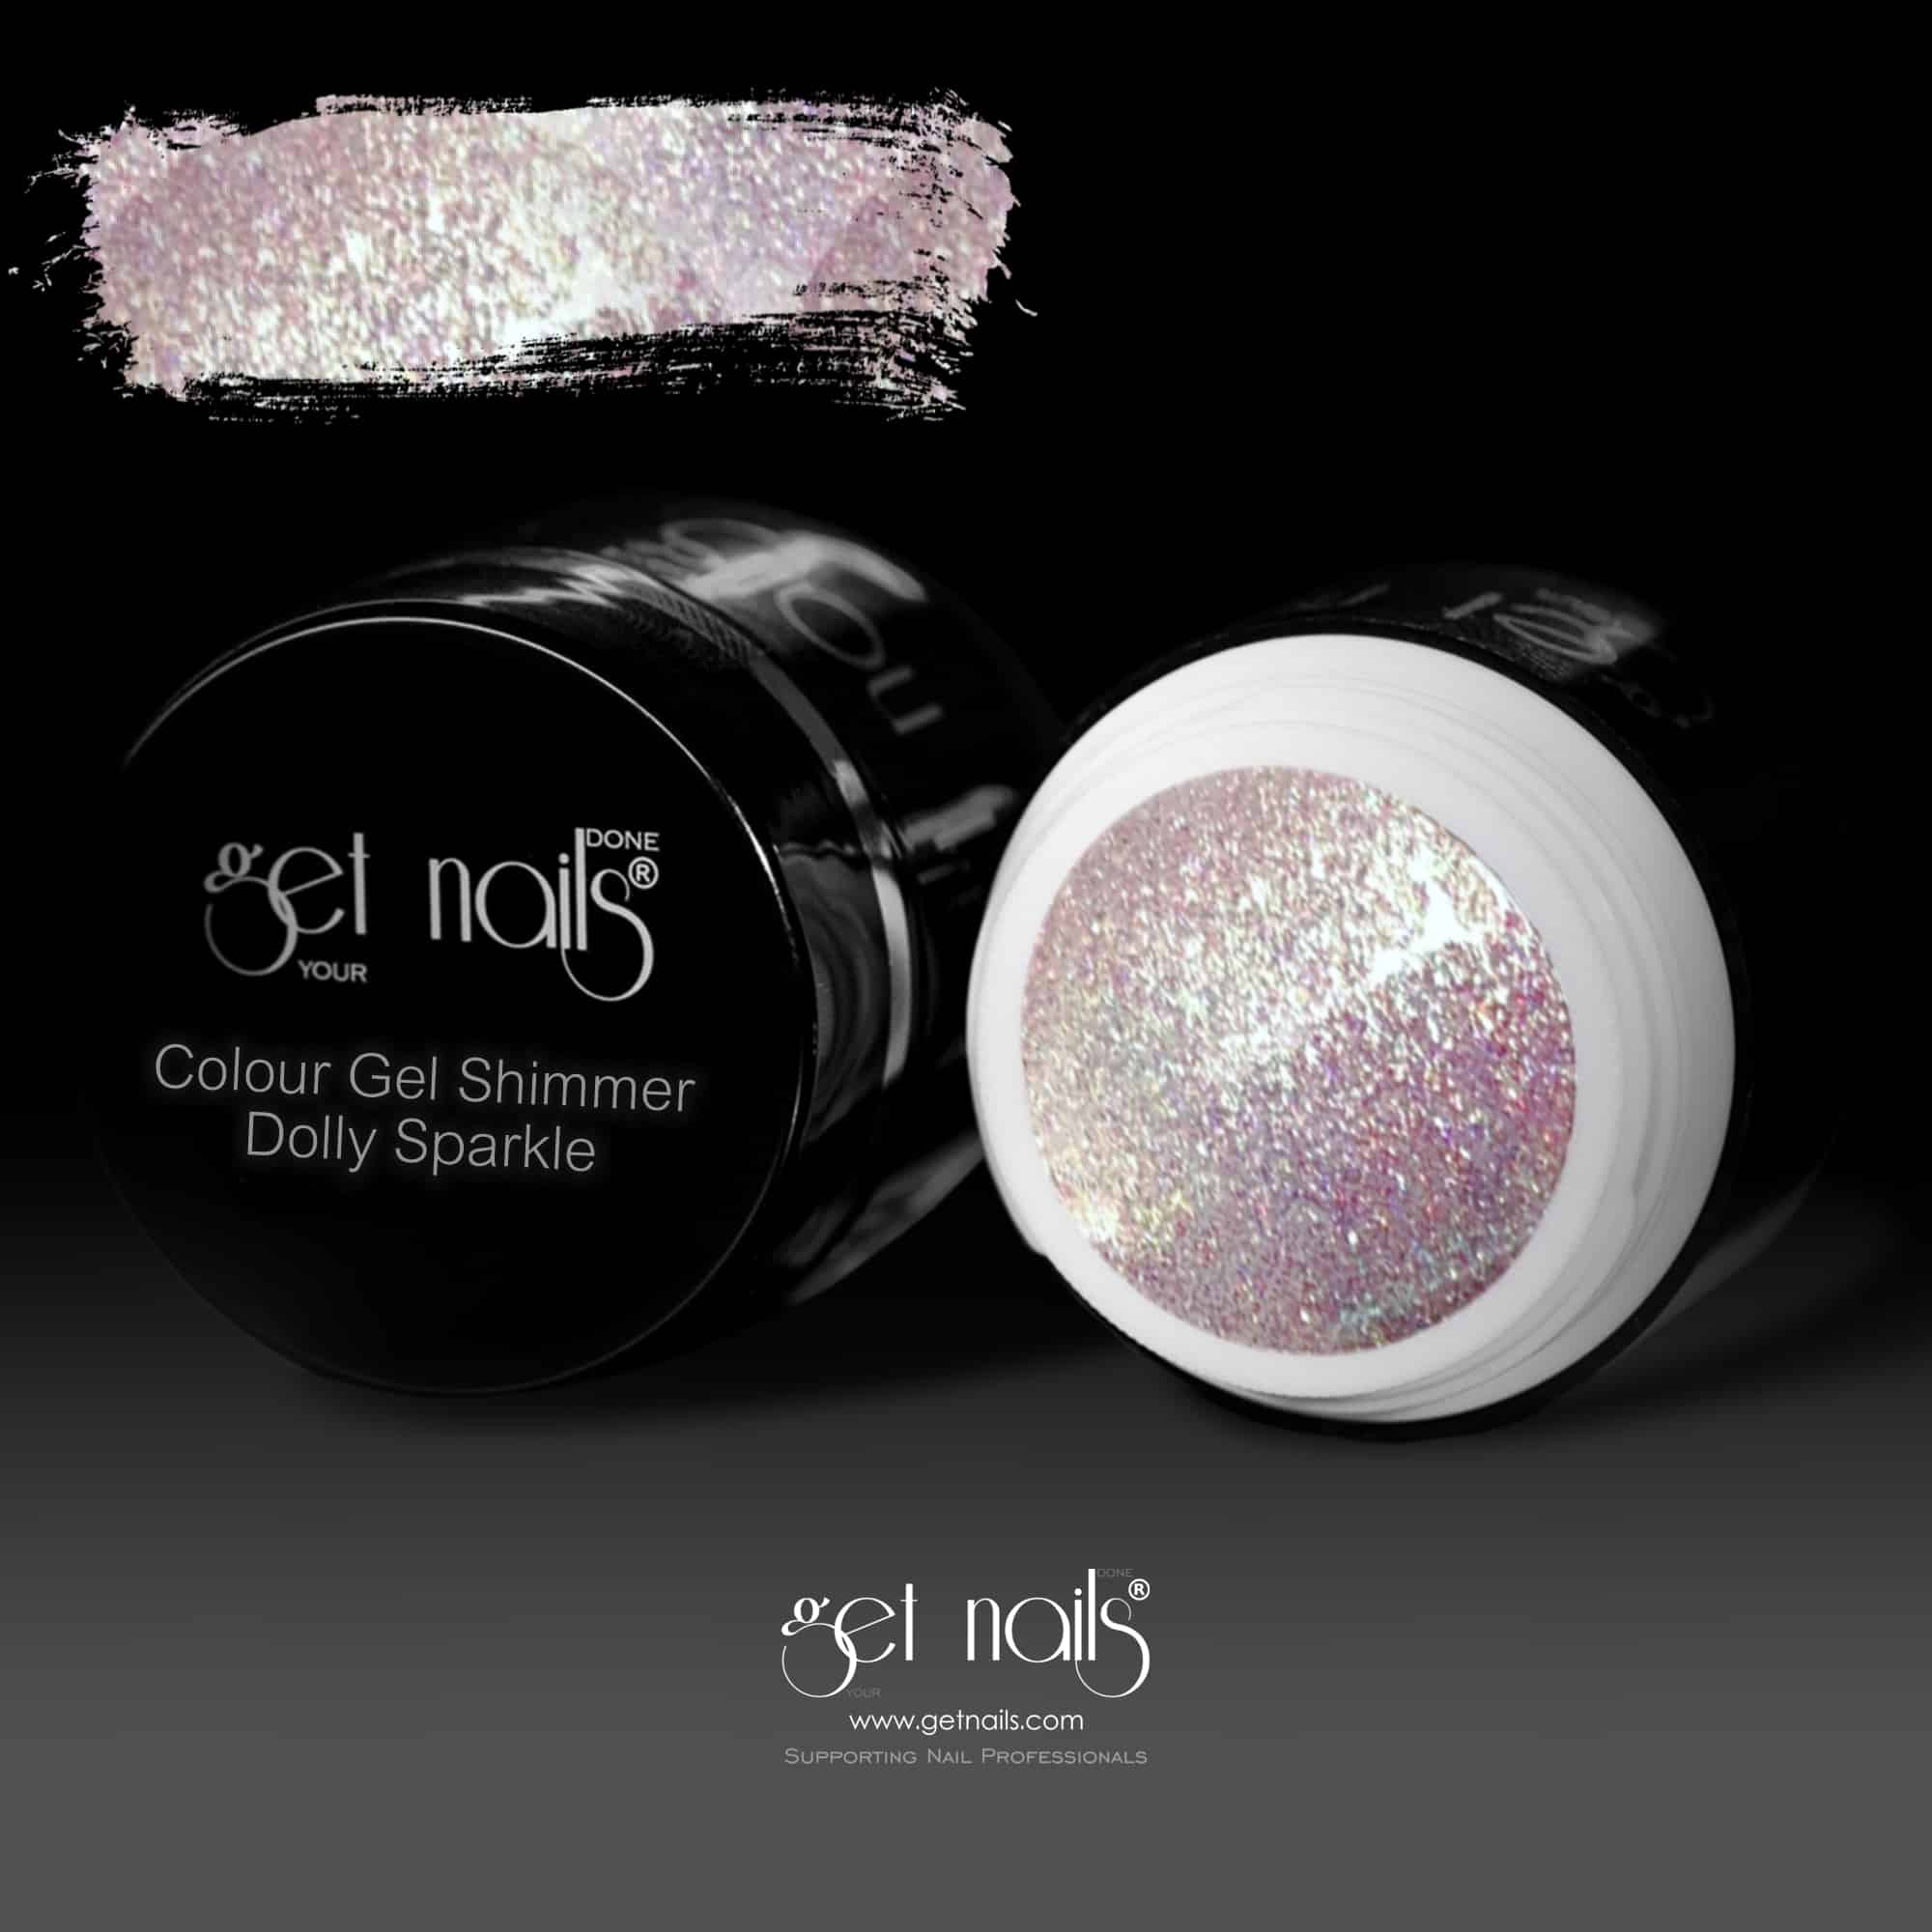 Get Nails Austria - Color Gel Shimmer Dolly Sparkle 5g